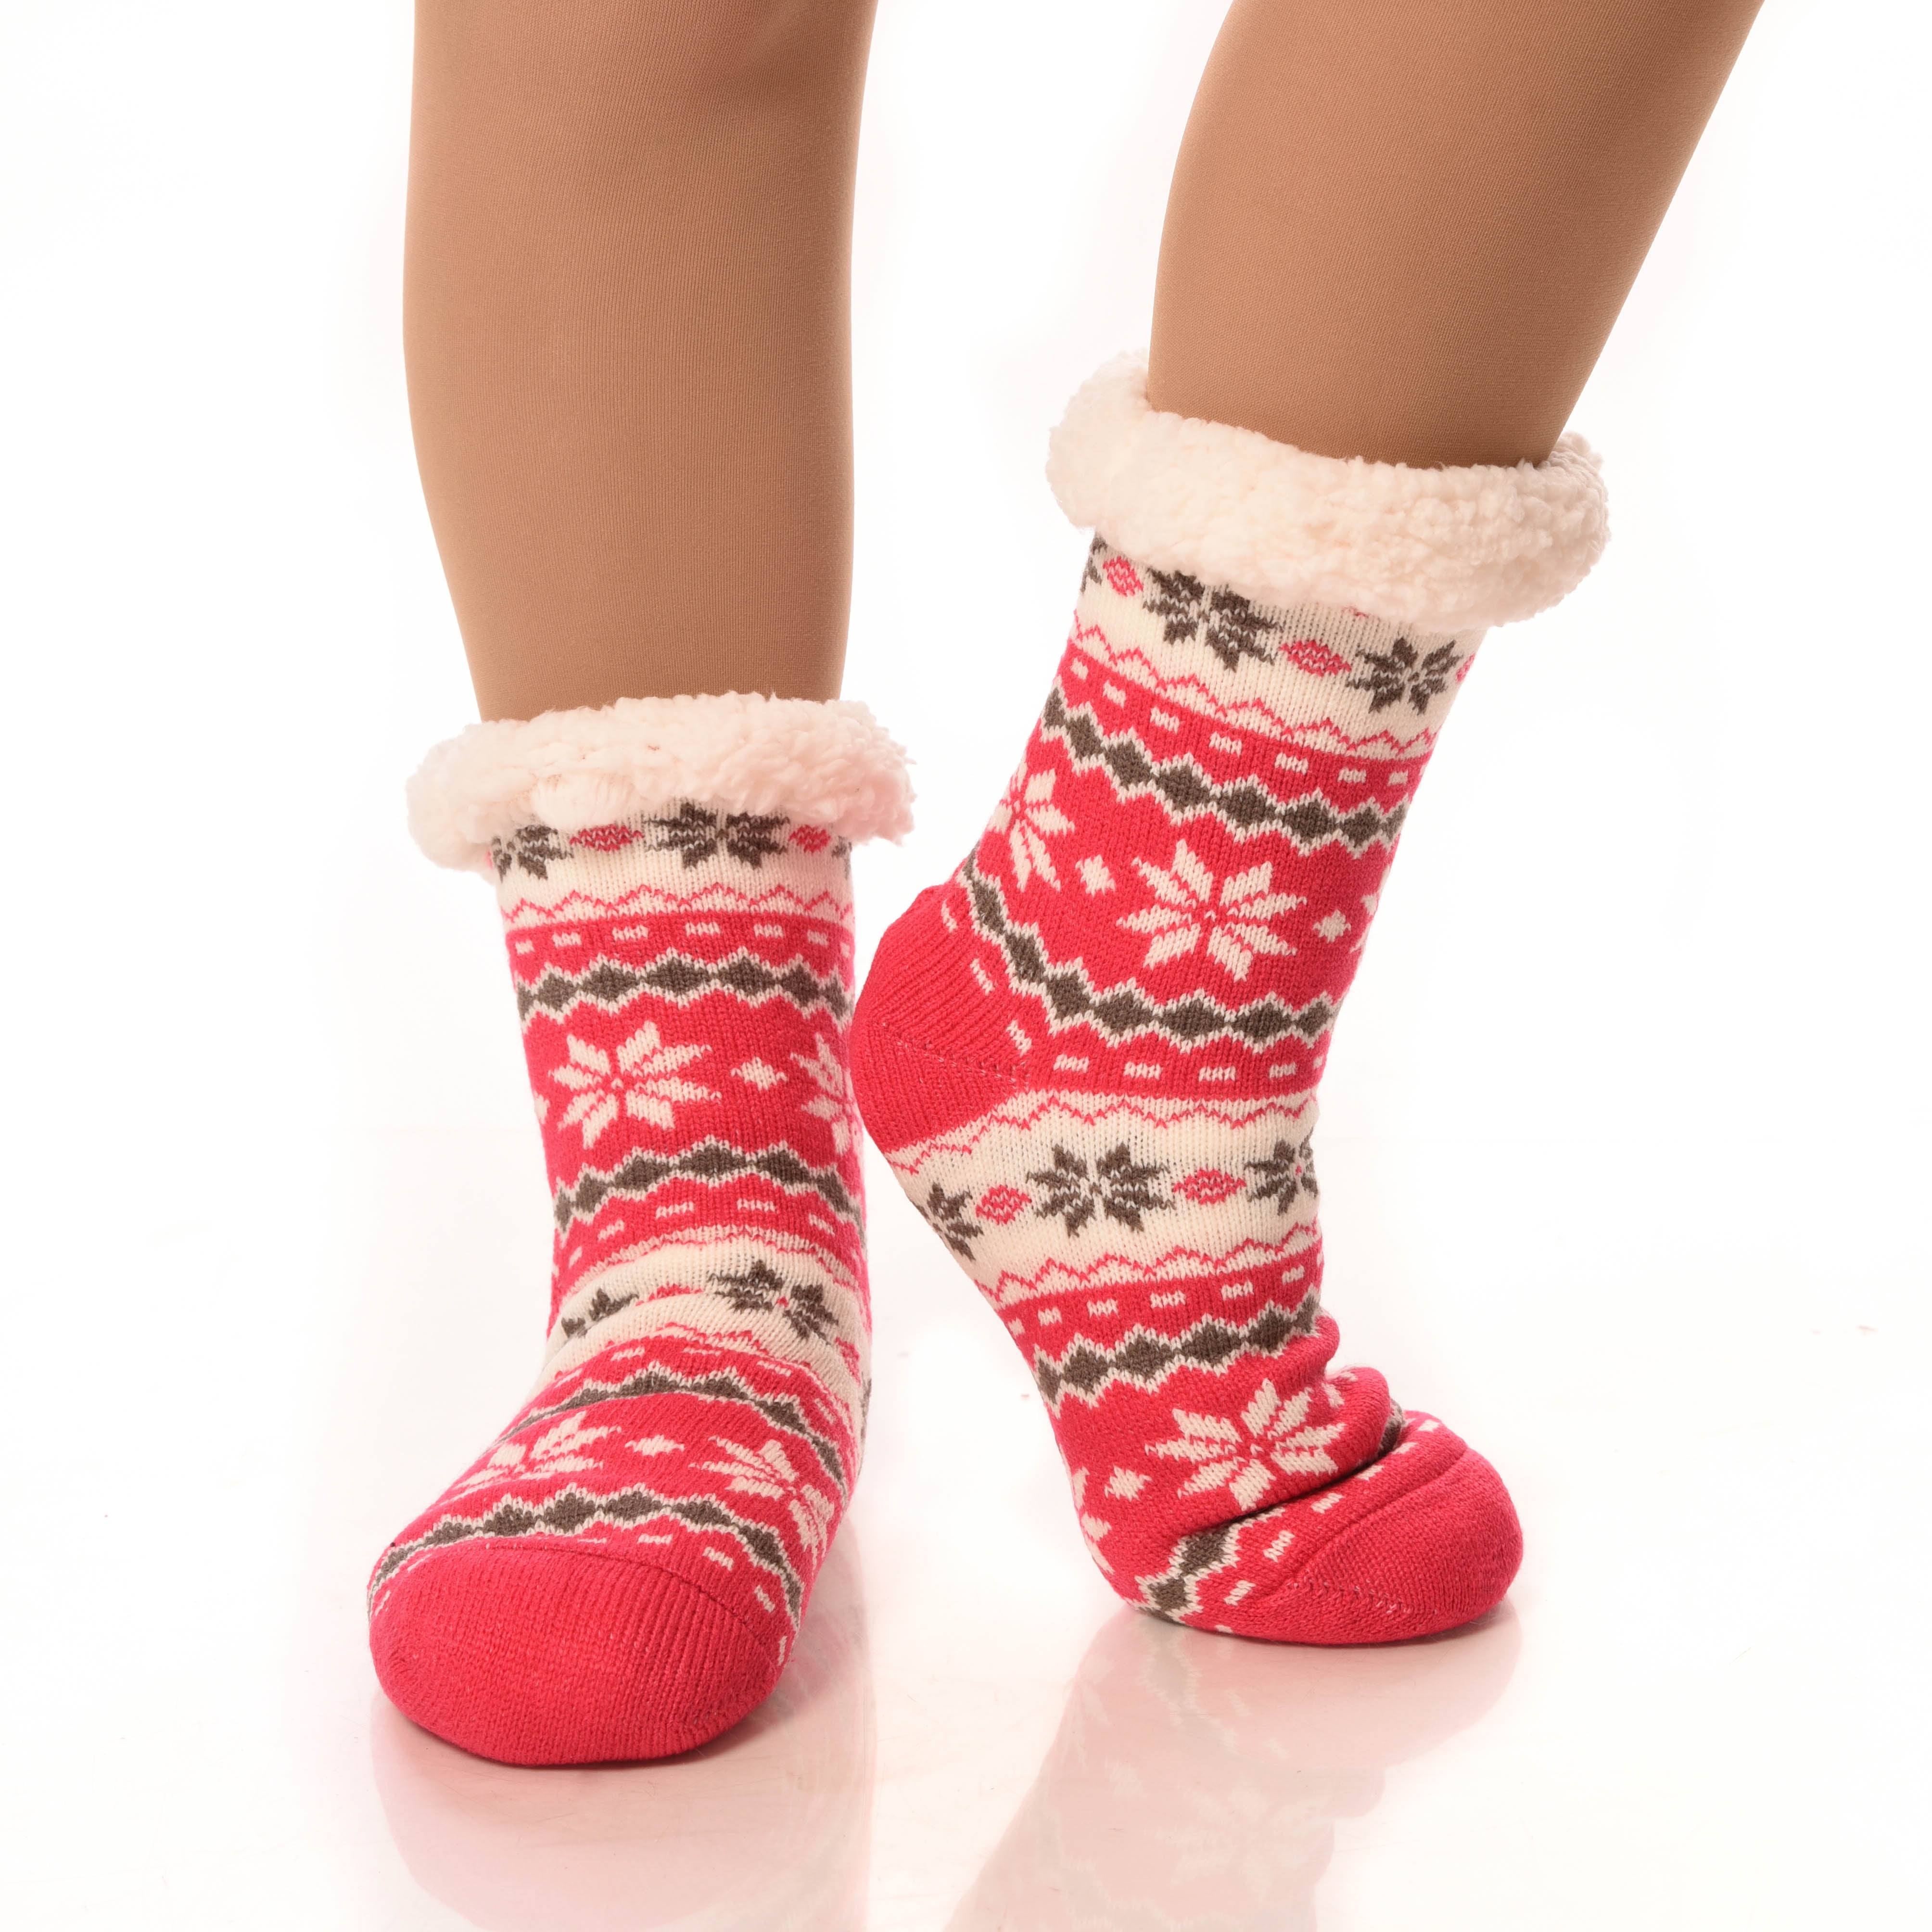 DEBRA WEITZNER Slipper Socks for Women Men Gripper Cozy Socks Winter ...